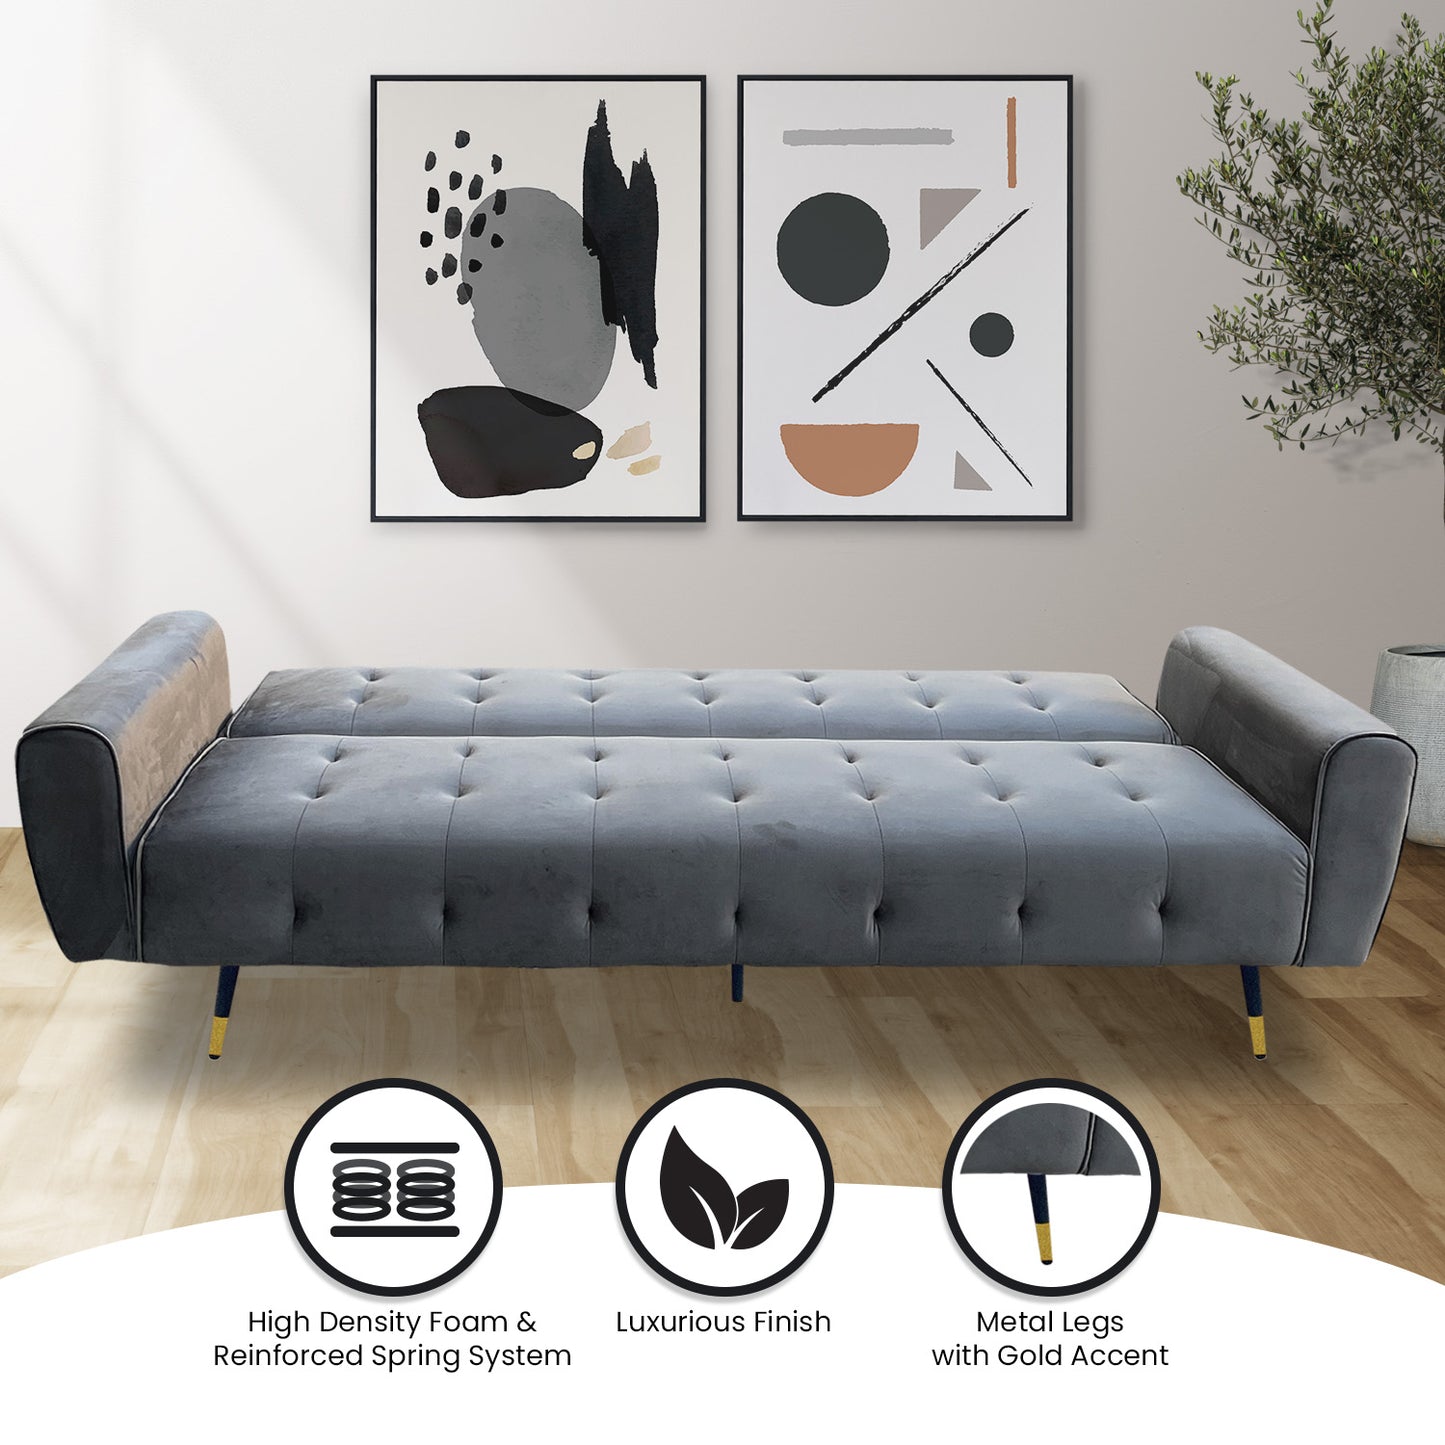 Milli 3-Seater Tufted Velvet Sofa Bed - Dark Grey